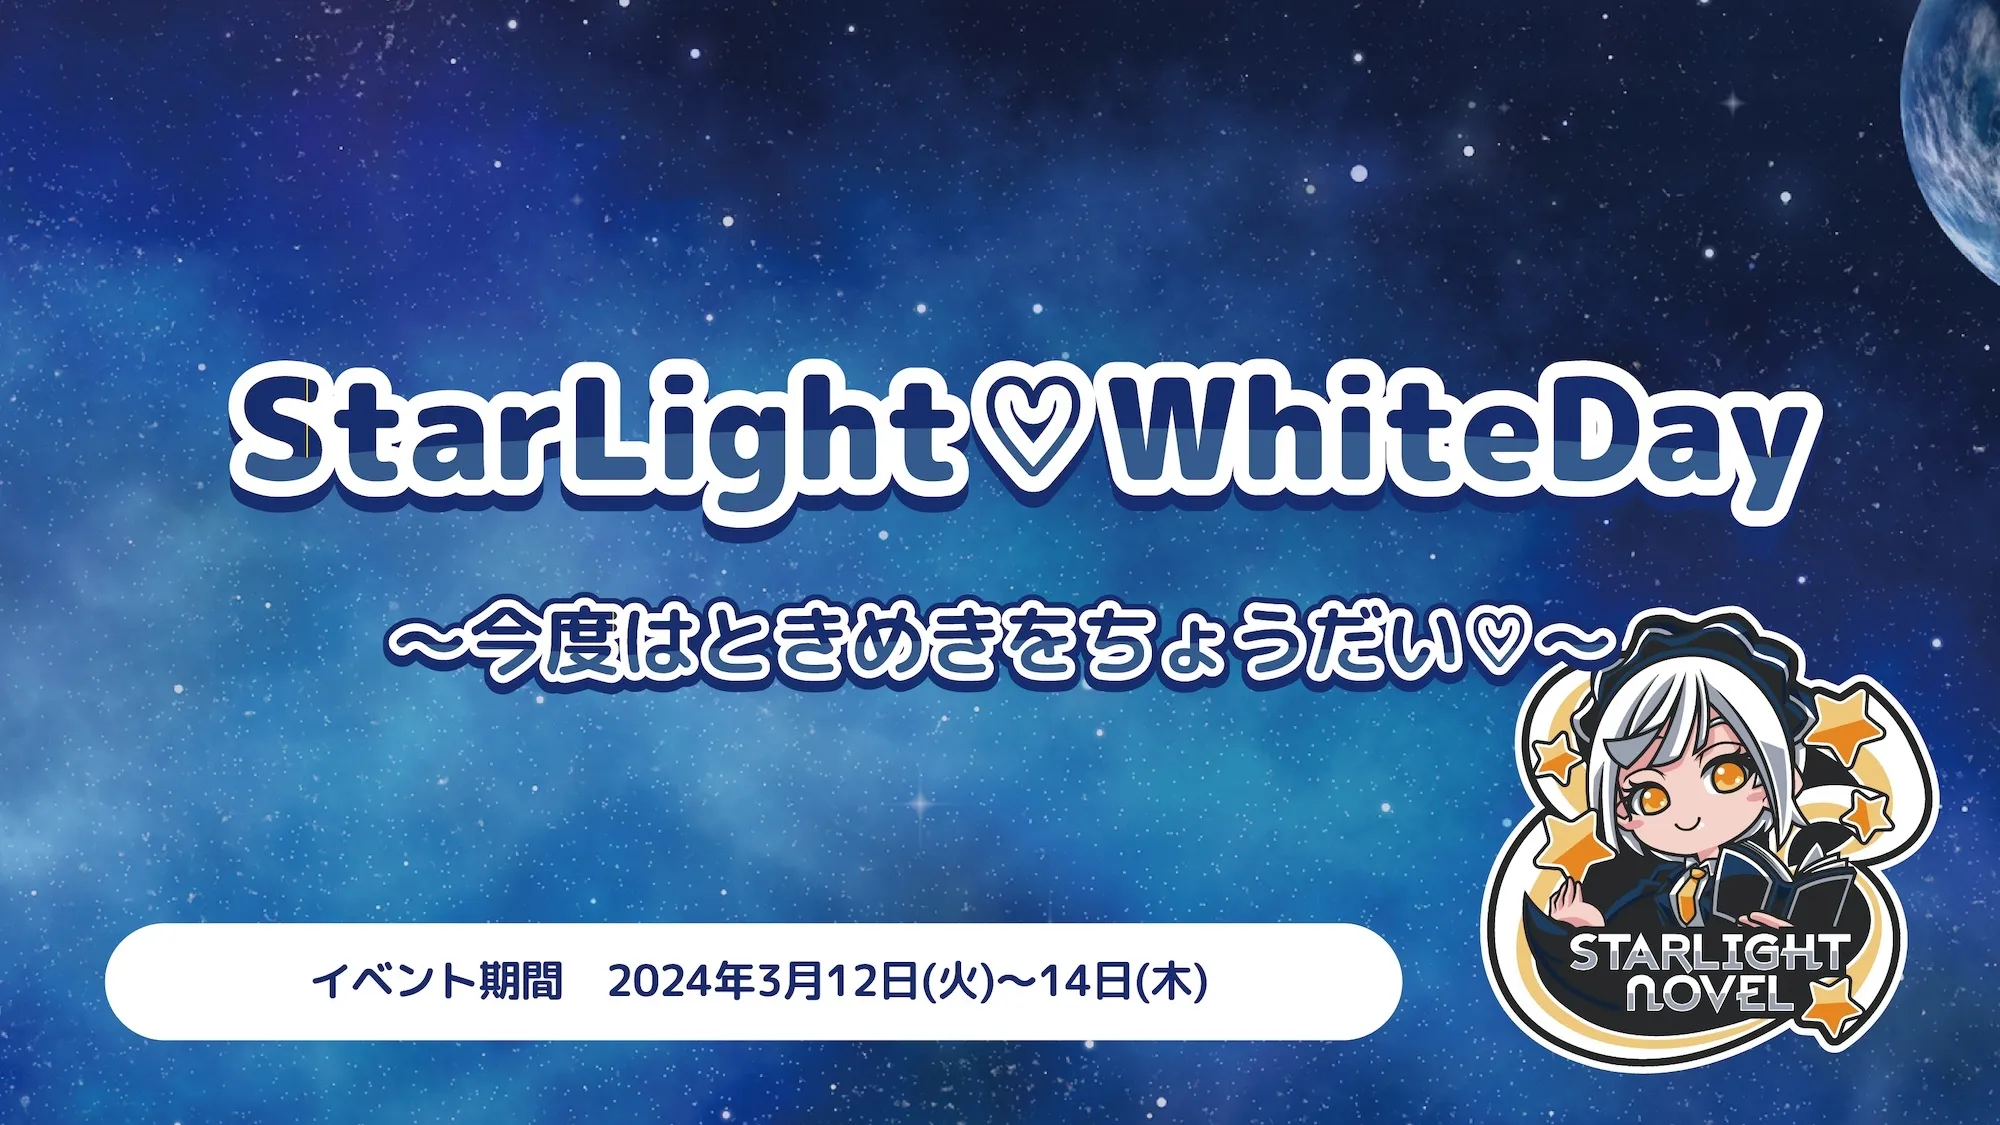 StarLight♡WhiteDay   　- 今度はときめきをちょうだい♡ - スターライトノベル